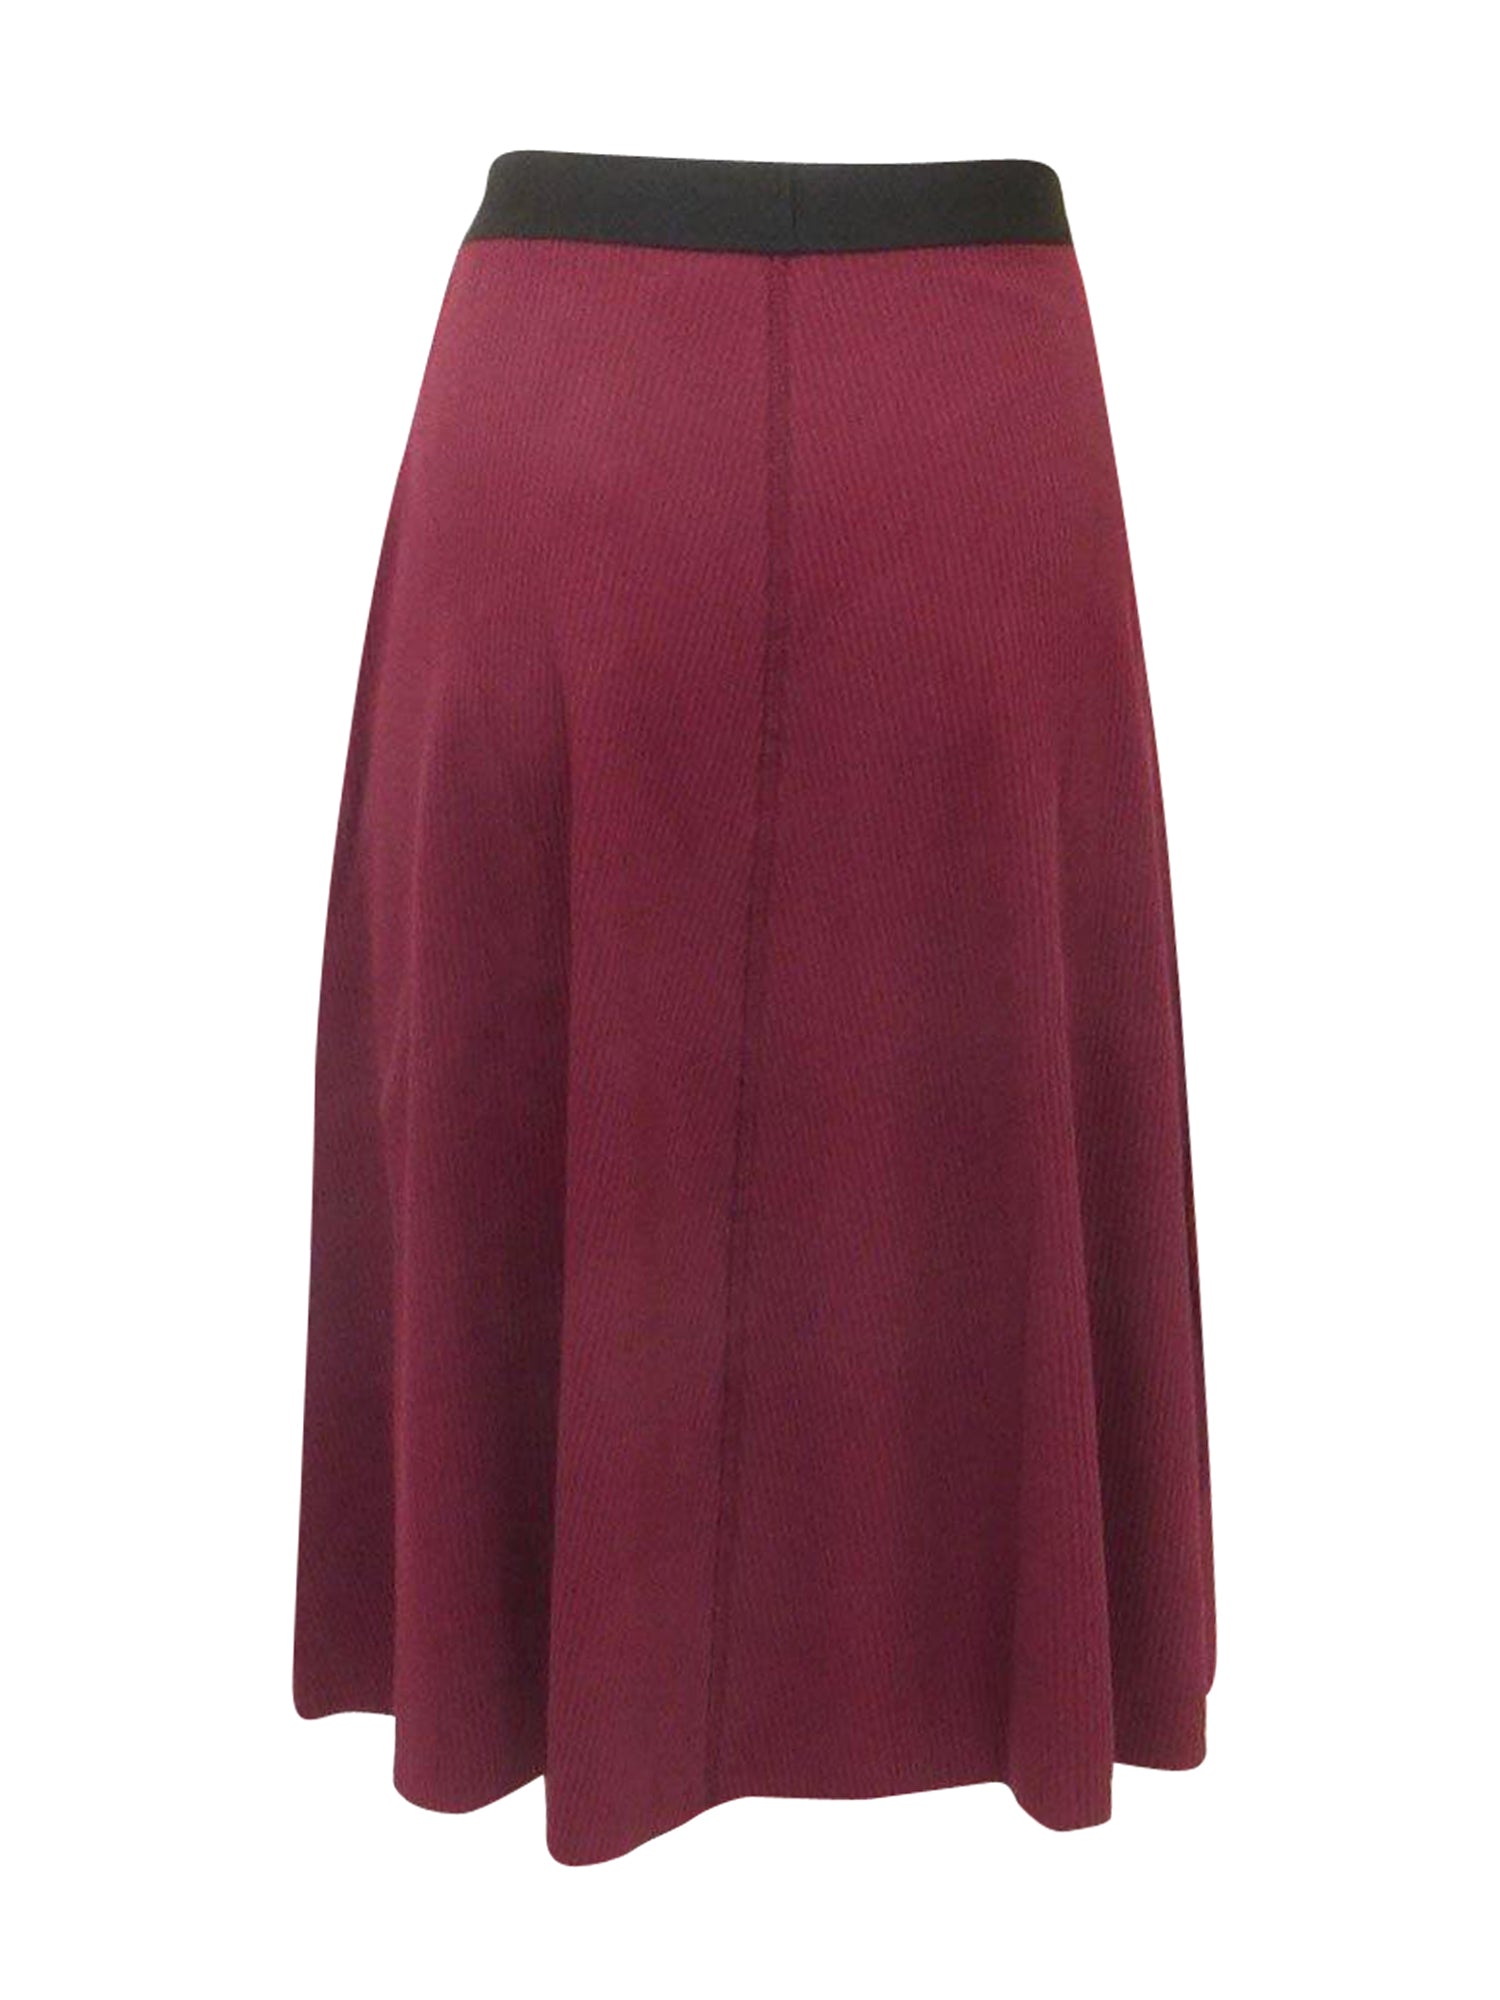 Nala Ribbed Skirt Set - Burgundy